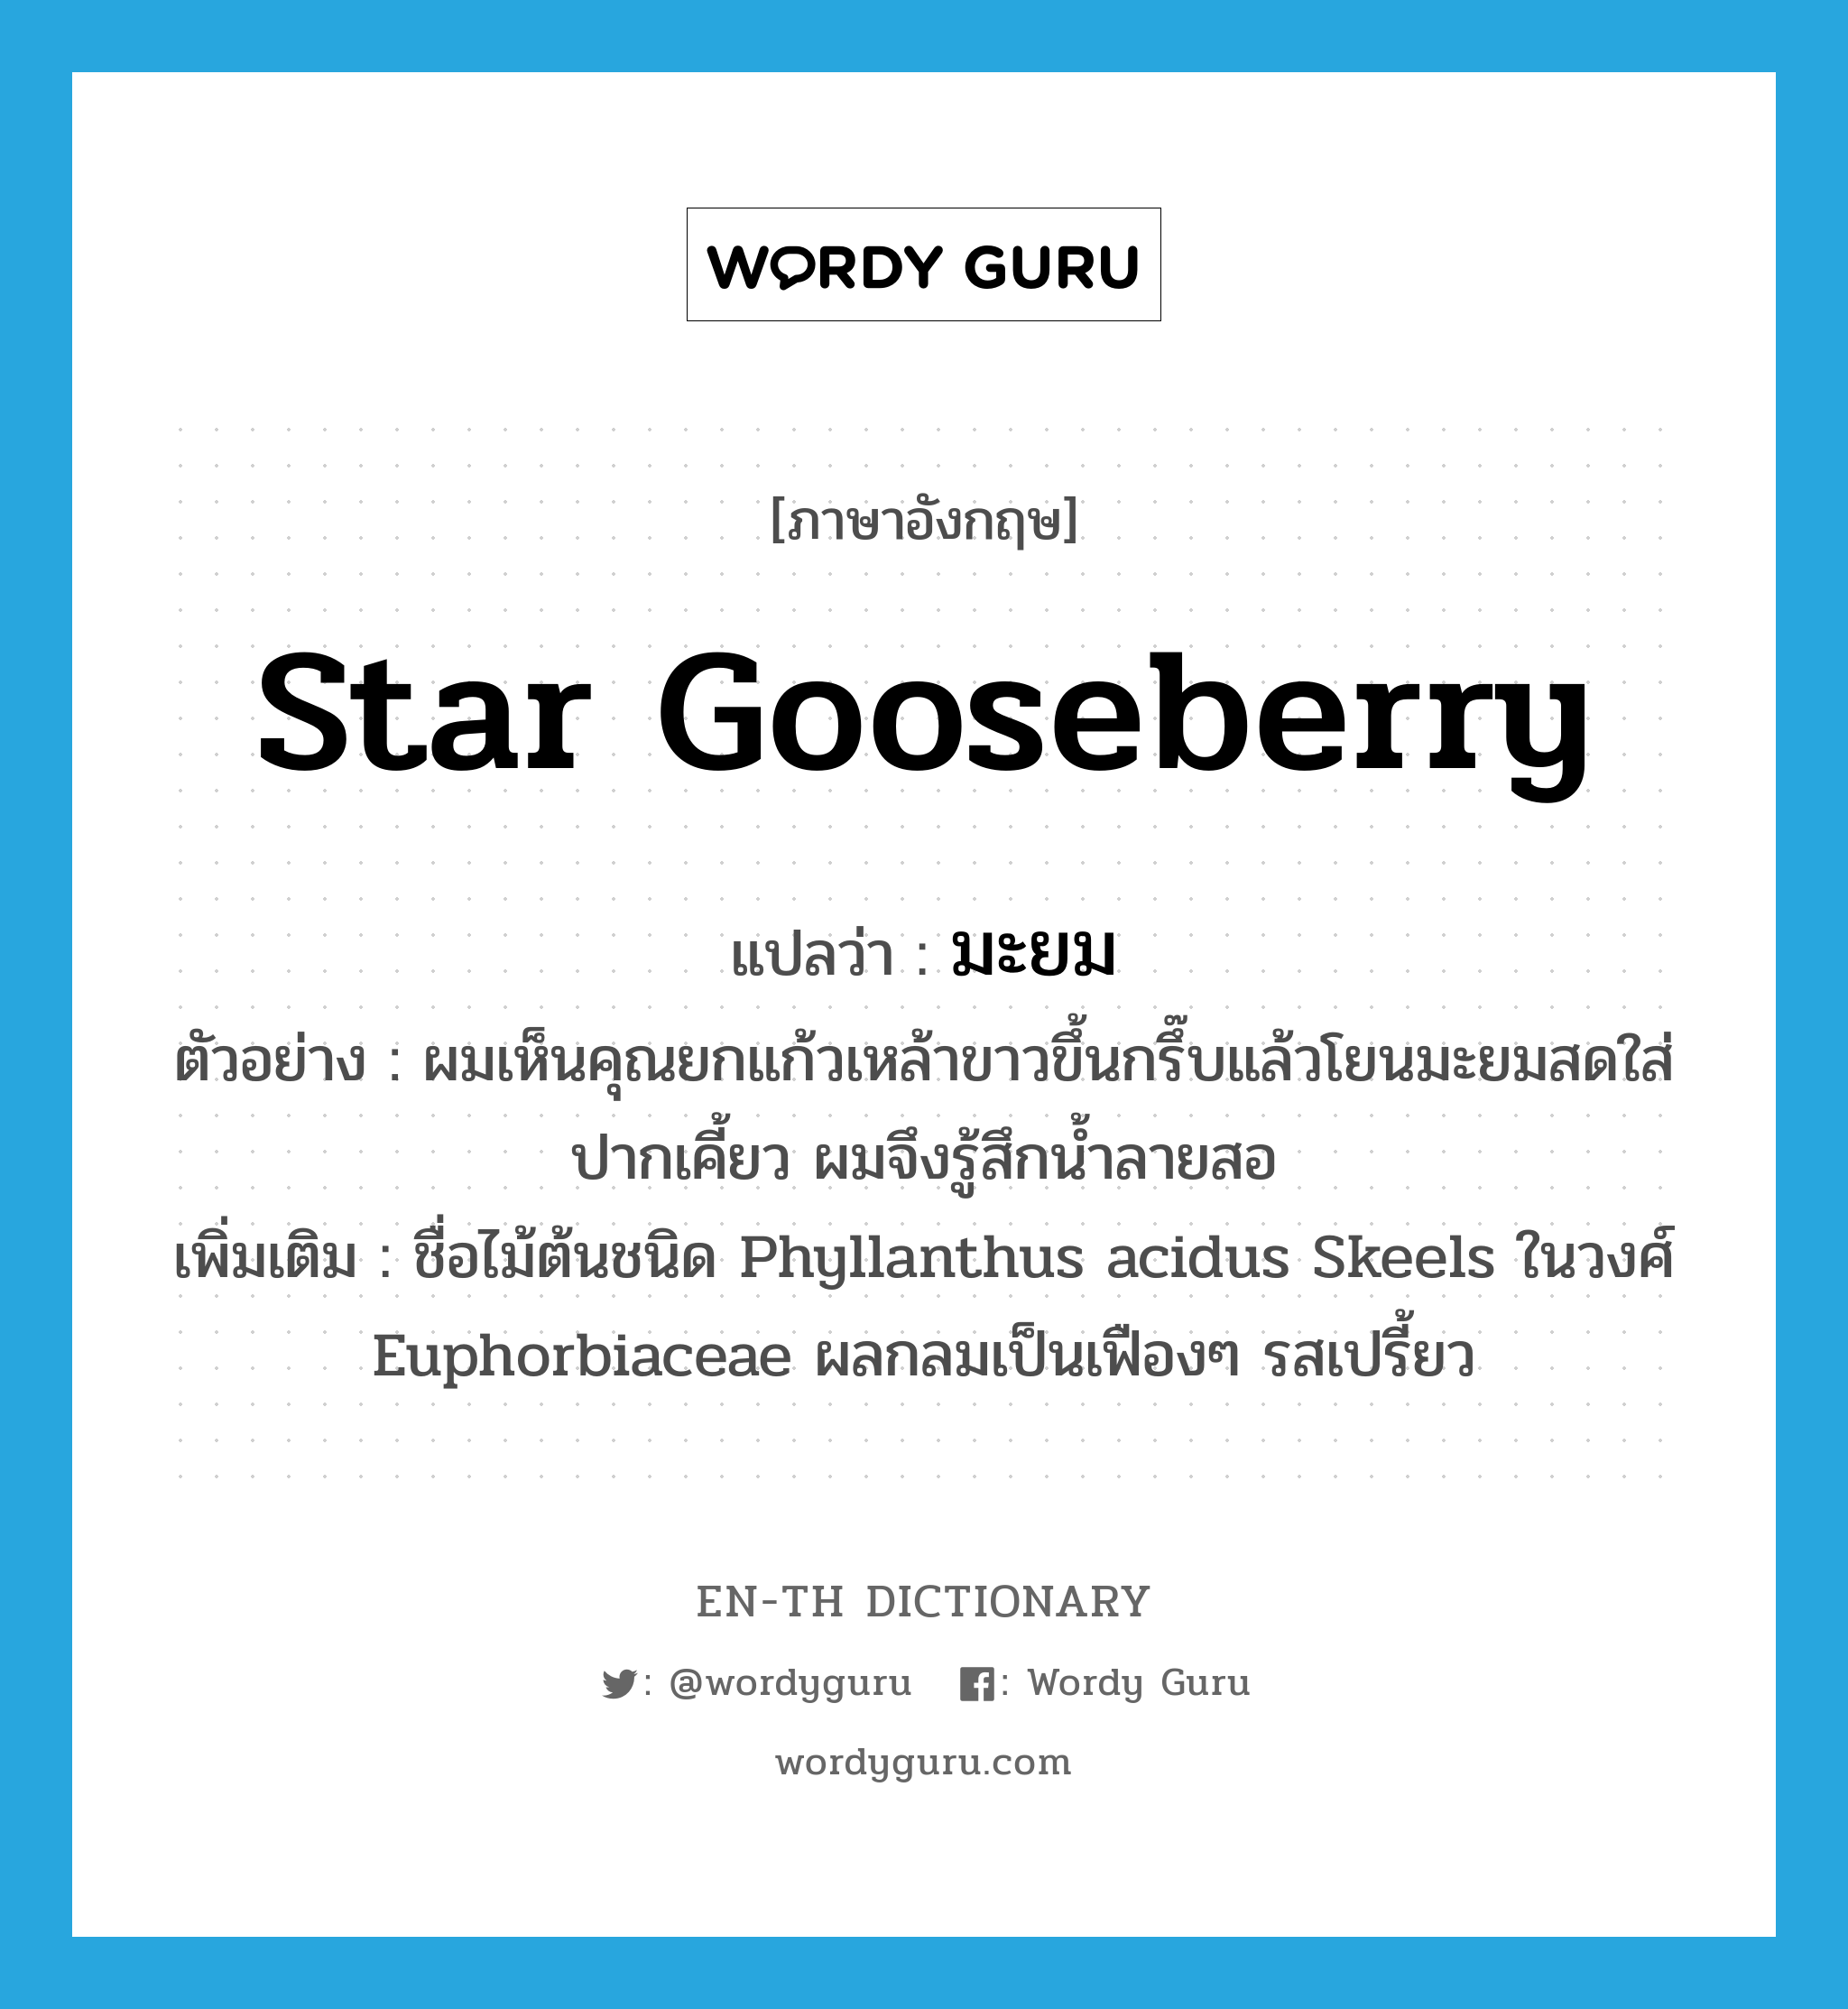 star gooseberry แปลว่า?, คำศัพท์ภาษาอังกฤษ star gooseberry แปลว่า มะยม ประเภท N ตัวอย่าง ผมเห็นคุณยกแก้วเหล้าขาวขึ้นกรึ๊บแล้วโยนมะยมสดใส่ปากเคี้ยว ผมจึงรู้สึกน้ำลายสอ เพิ่มเติม ชื่อไม้ต้นชนิด Phyllanthus acidus Skeels ในวงศ์ Euphorbiaceae ผลกลมเป็นเฟืองๆ รสเปรี้ยว หมวด N